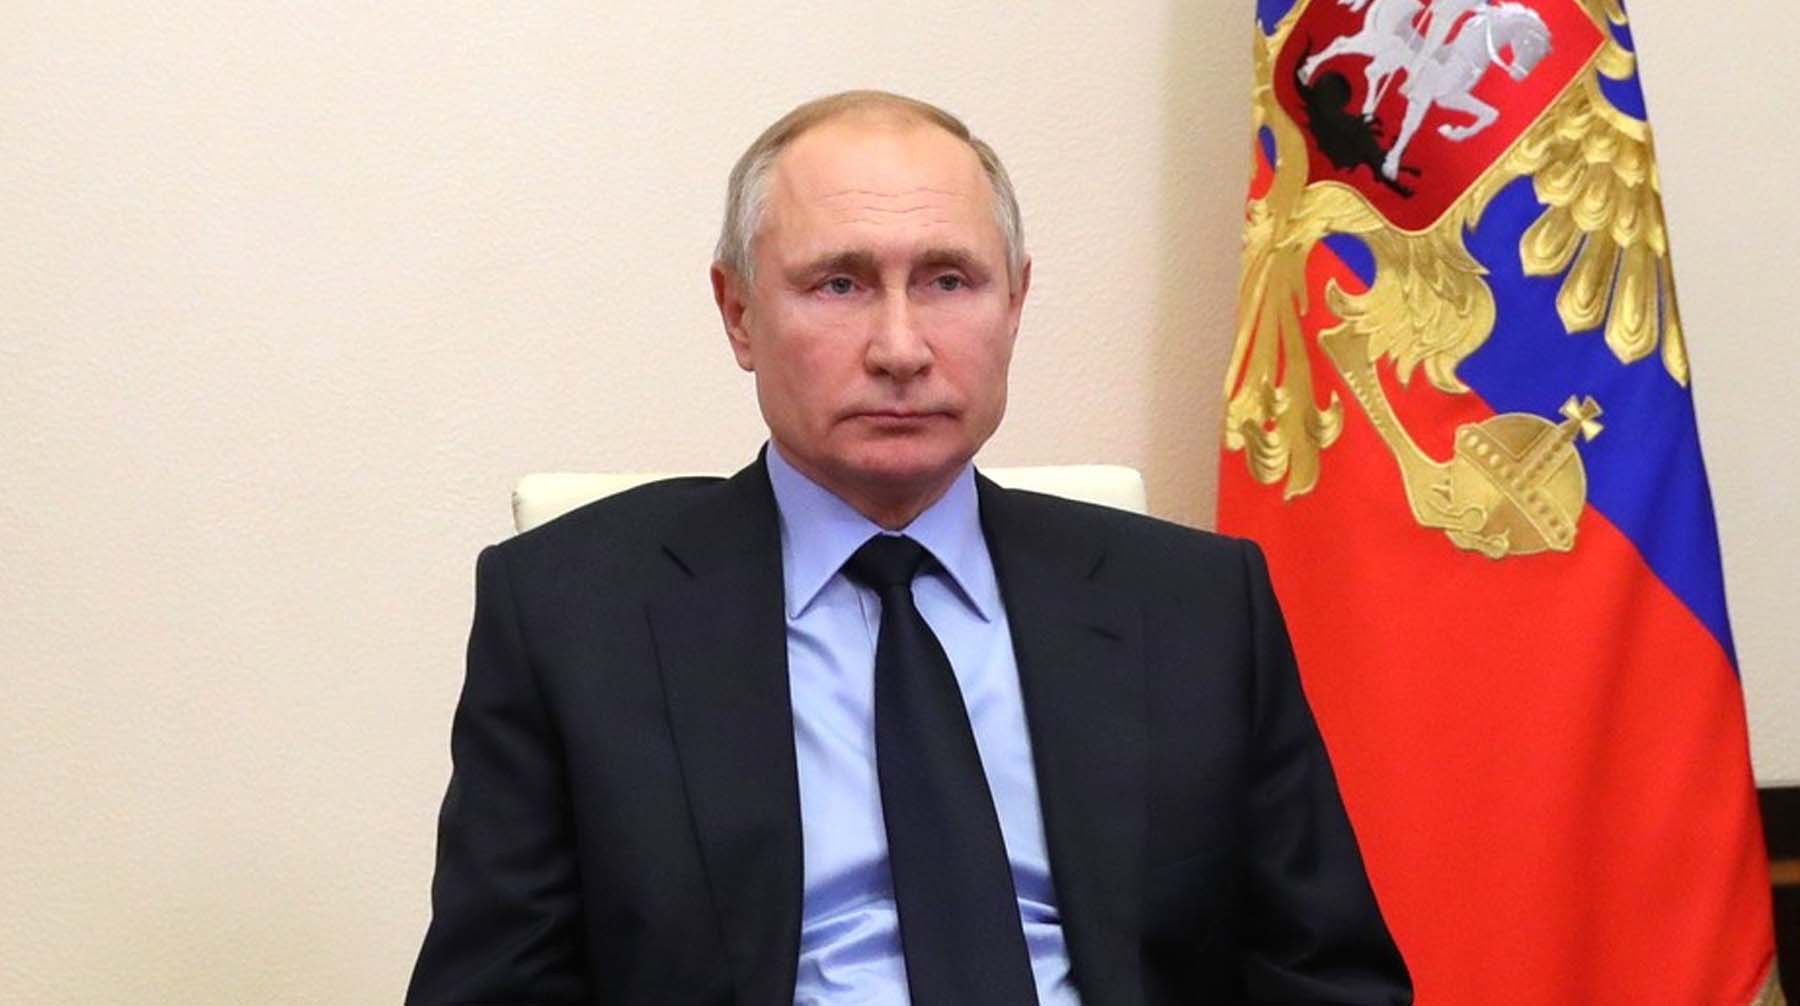 Dailystorm - Путин предложил снять предел по возрасту для назначаемых им чиновников